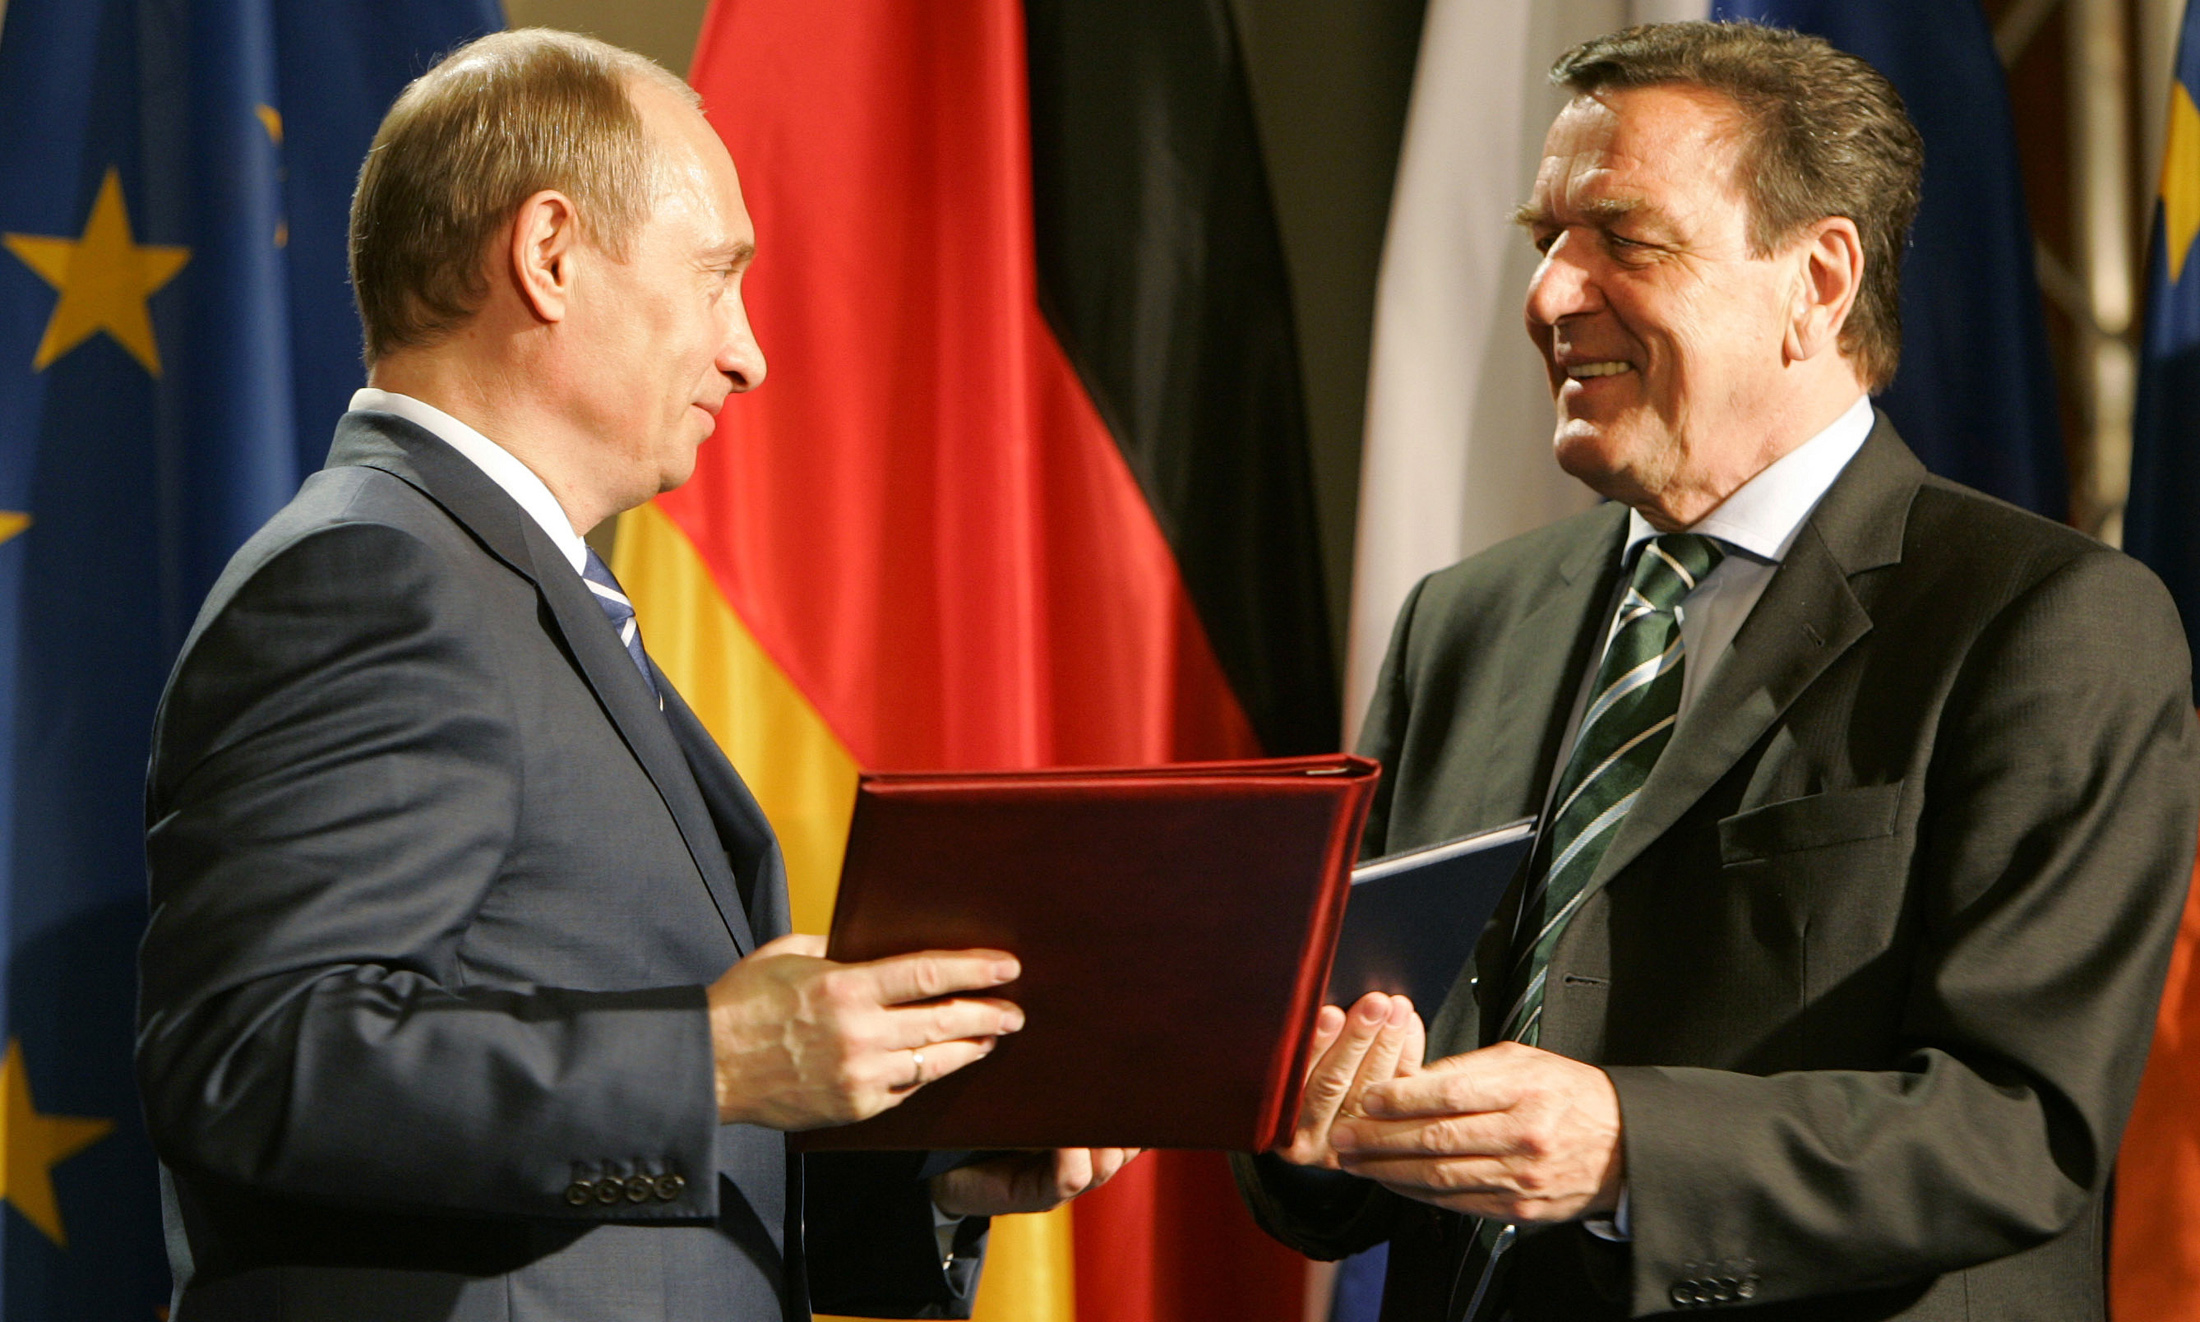 Toenmalig bondskanselier Gerhard Schroder en de Russische president Poetin bij het sluiten van de overeenkomst over Nord Stream in 2005. Foto: Reuters